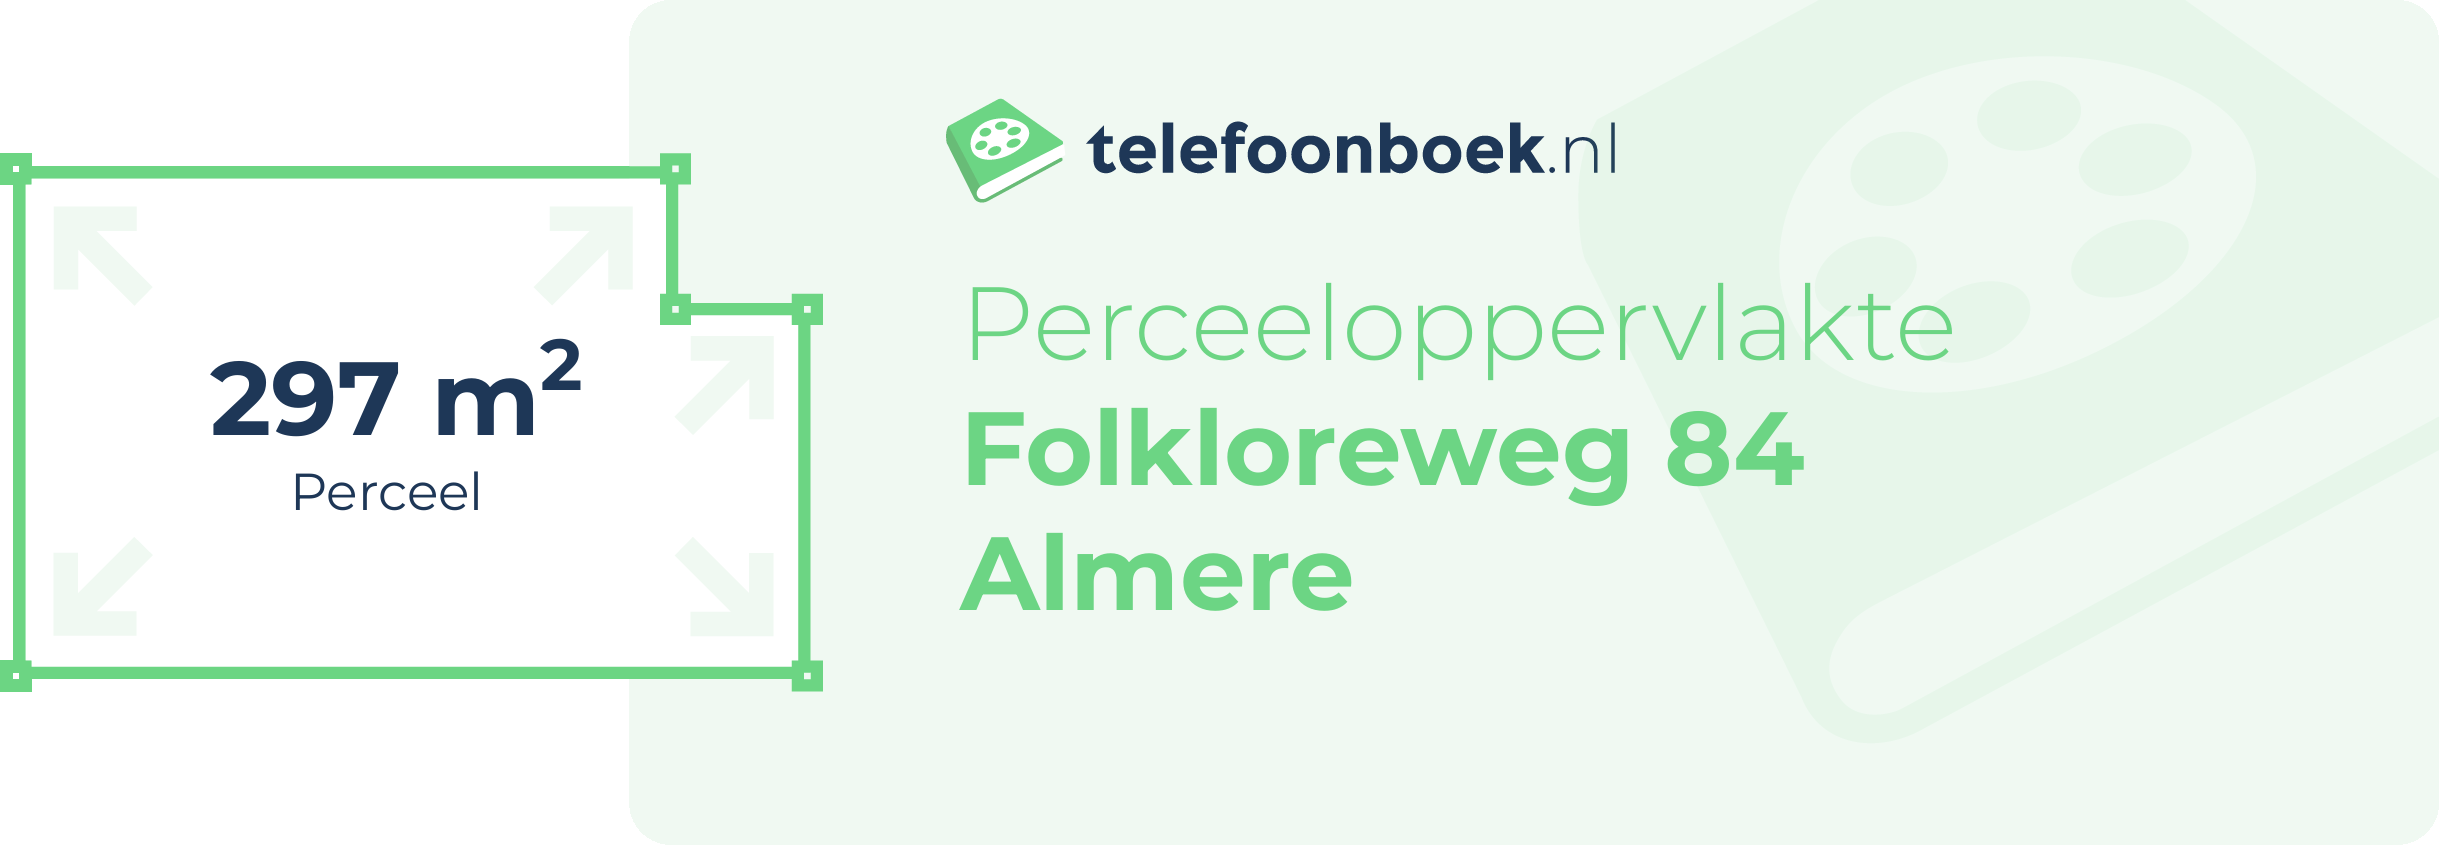 Perceeloppervlakte Folkloreweg 84 Almere